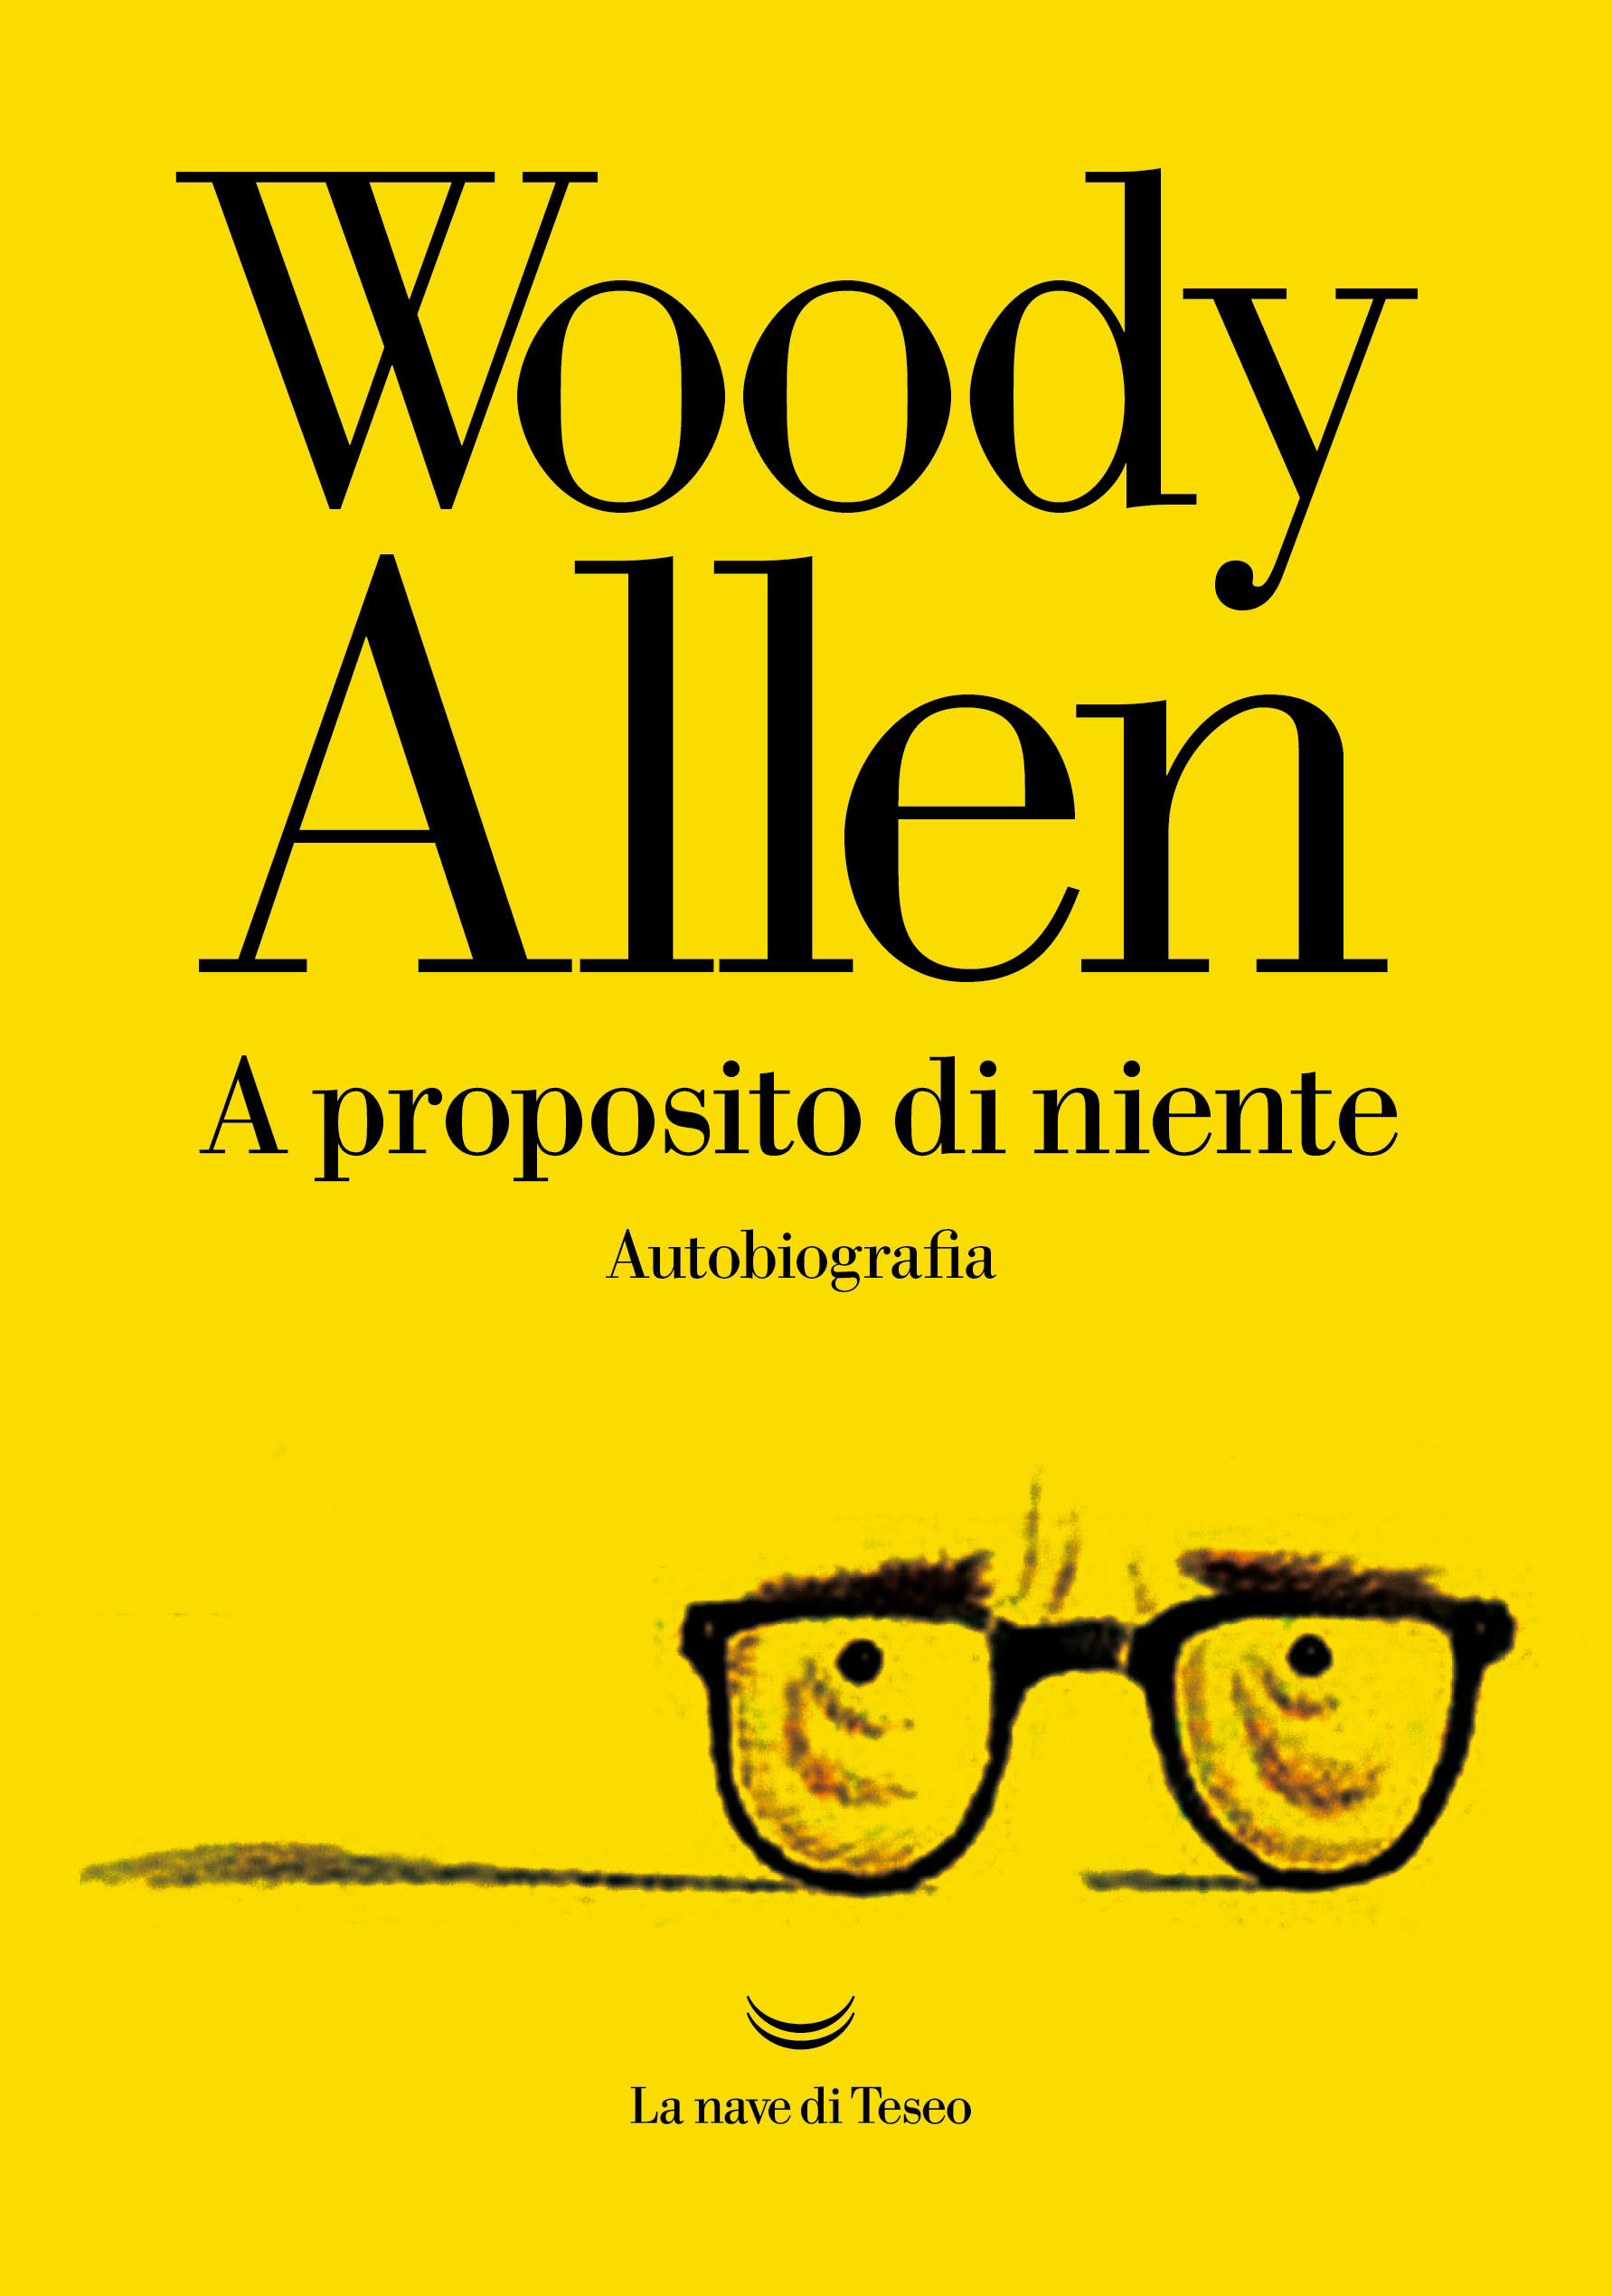 Woody Allen si racconta tra passione e passioni